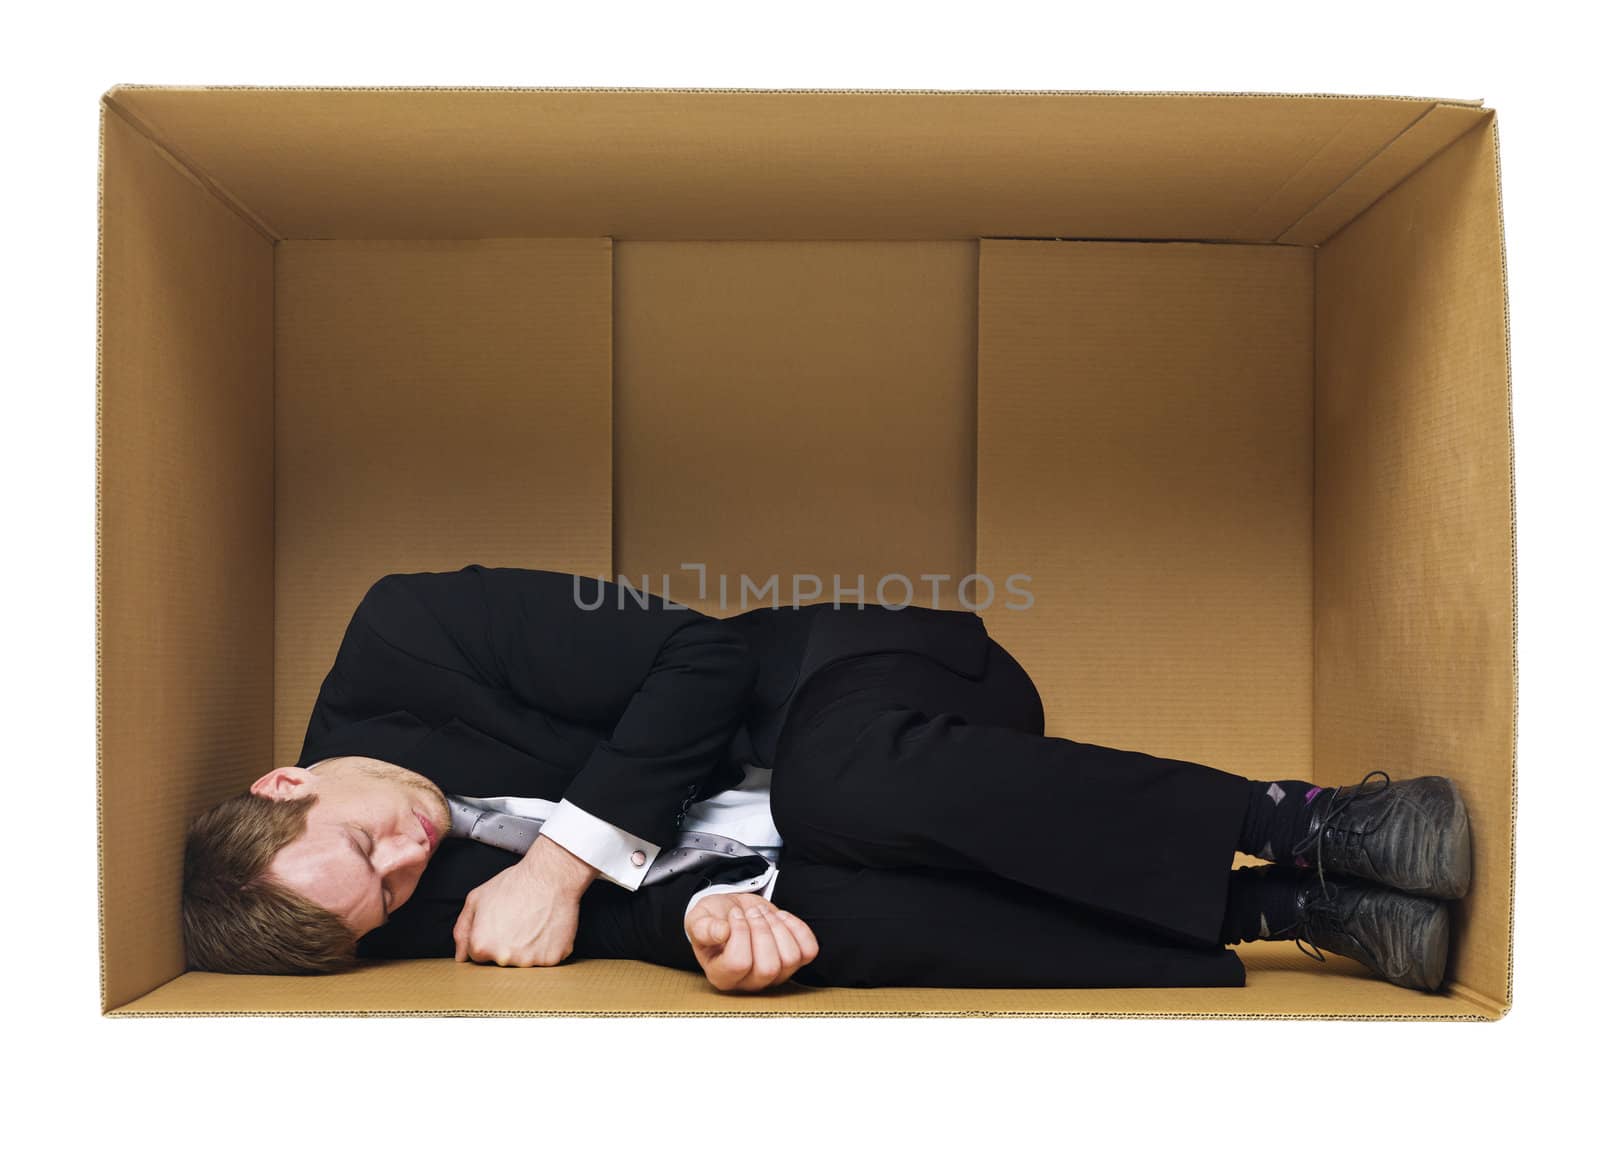 Sleeping in a cardboard box by gemenacom